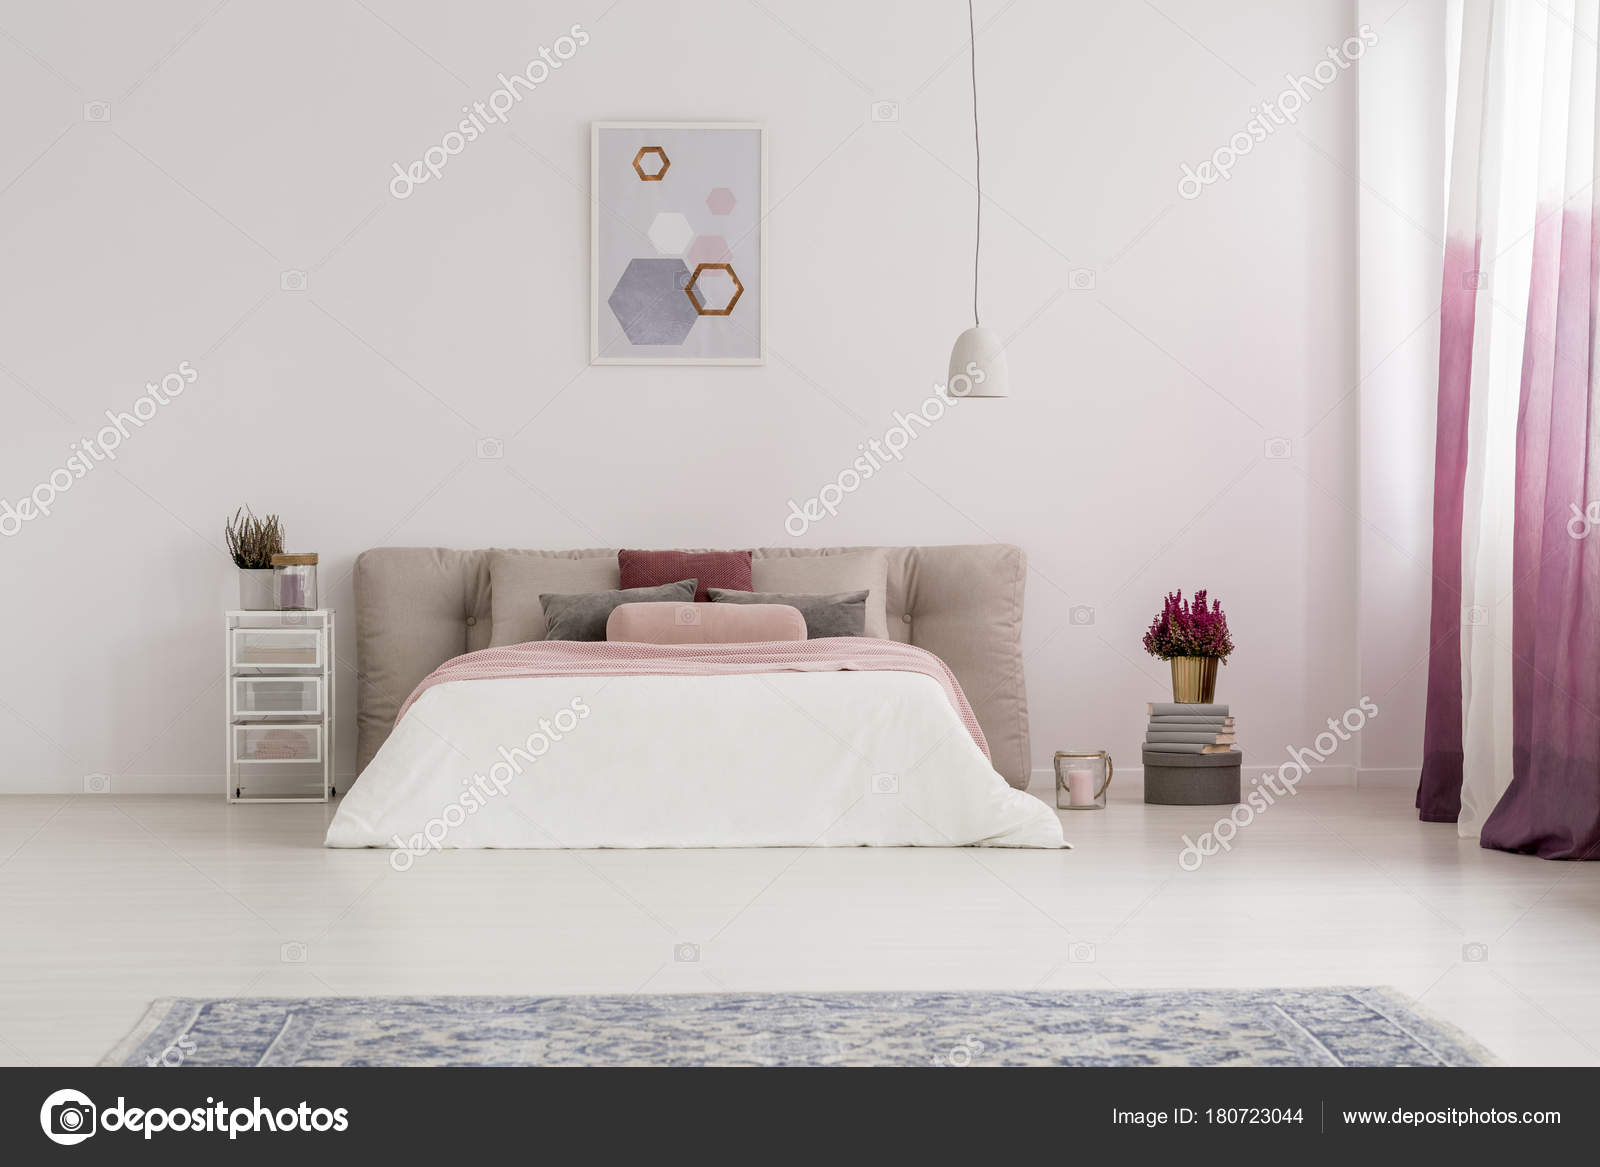 Fonkelnieuw Witte lamp boven bed — Stockfoto © photographee.eu #180723044 BJ-73